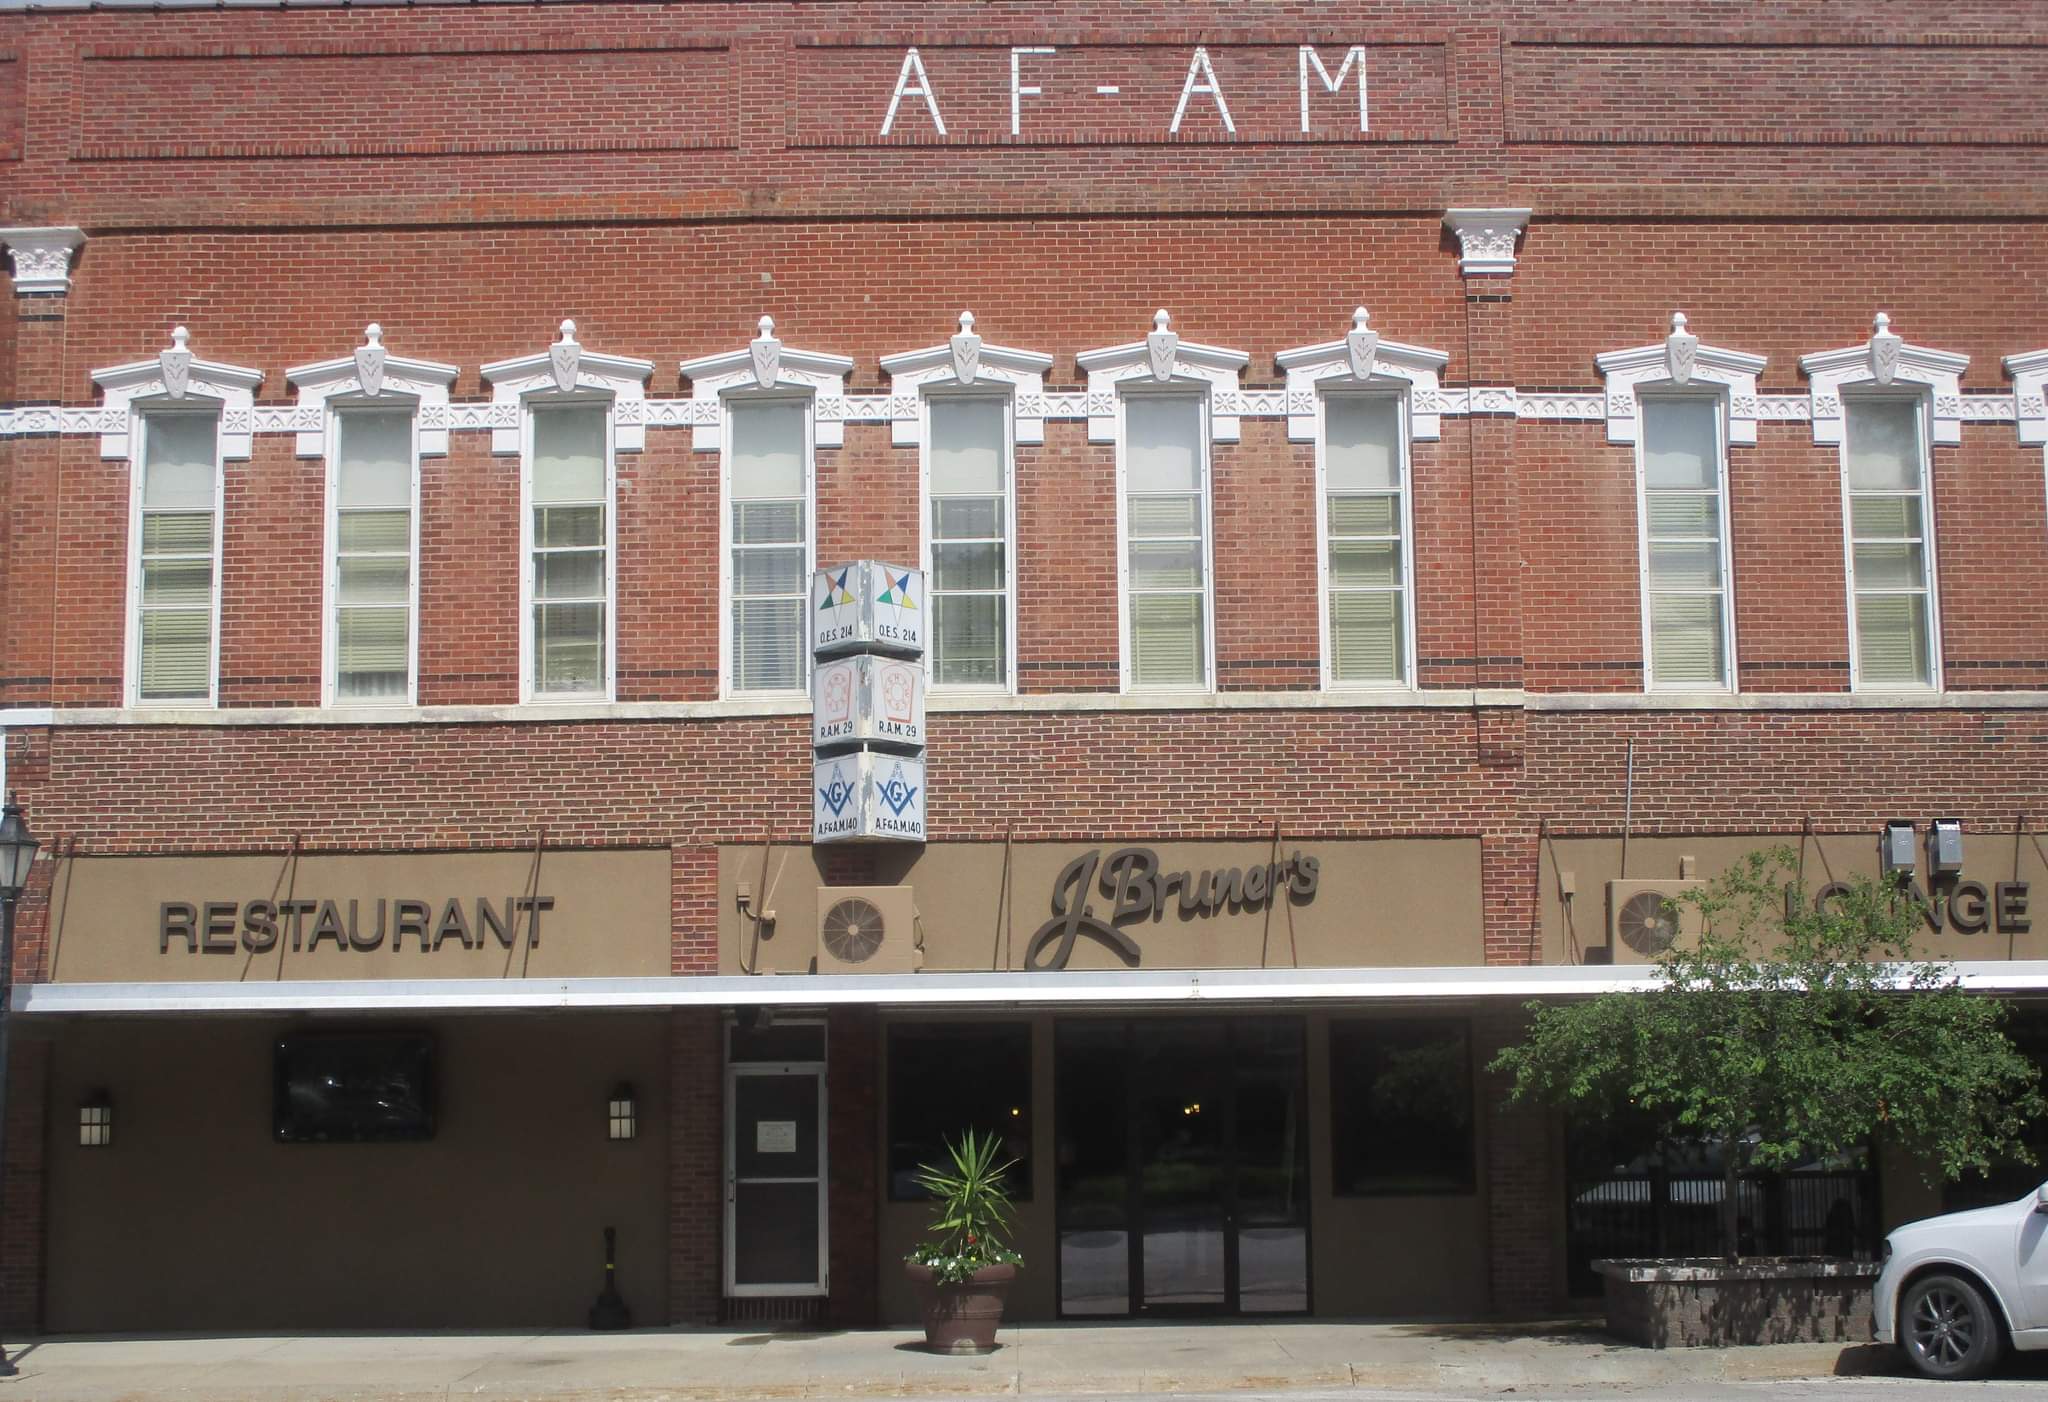 " AF - AM" Building housing J Bruner's Restaurant